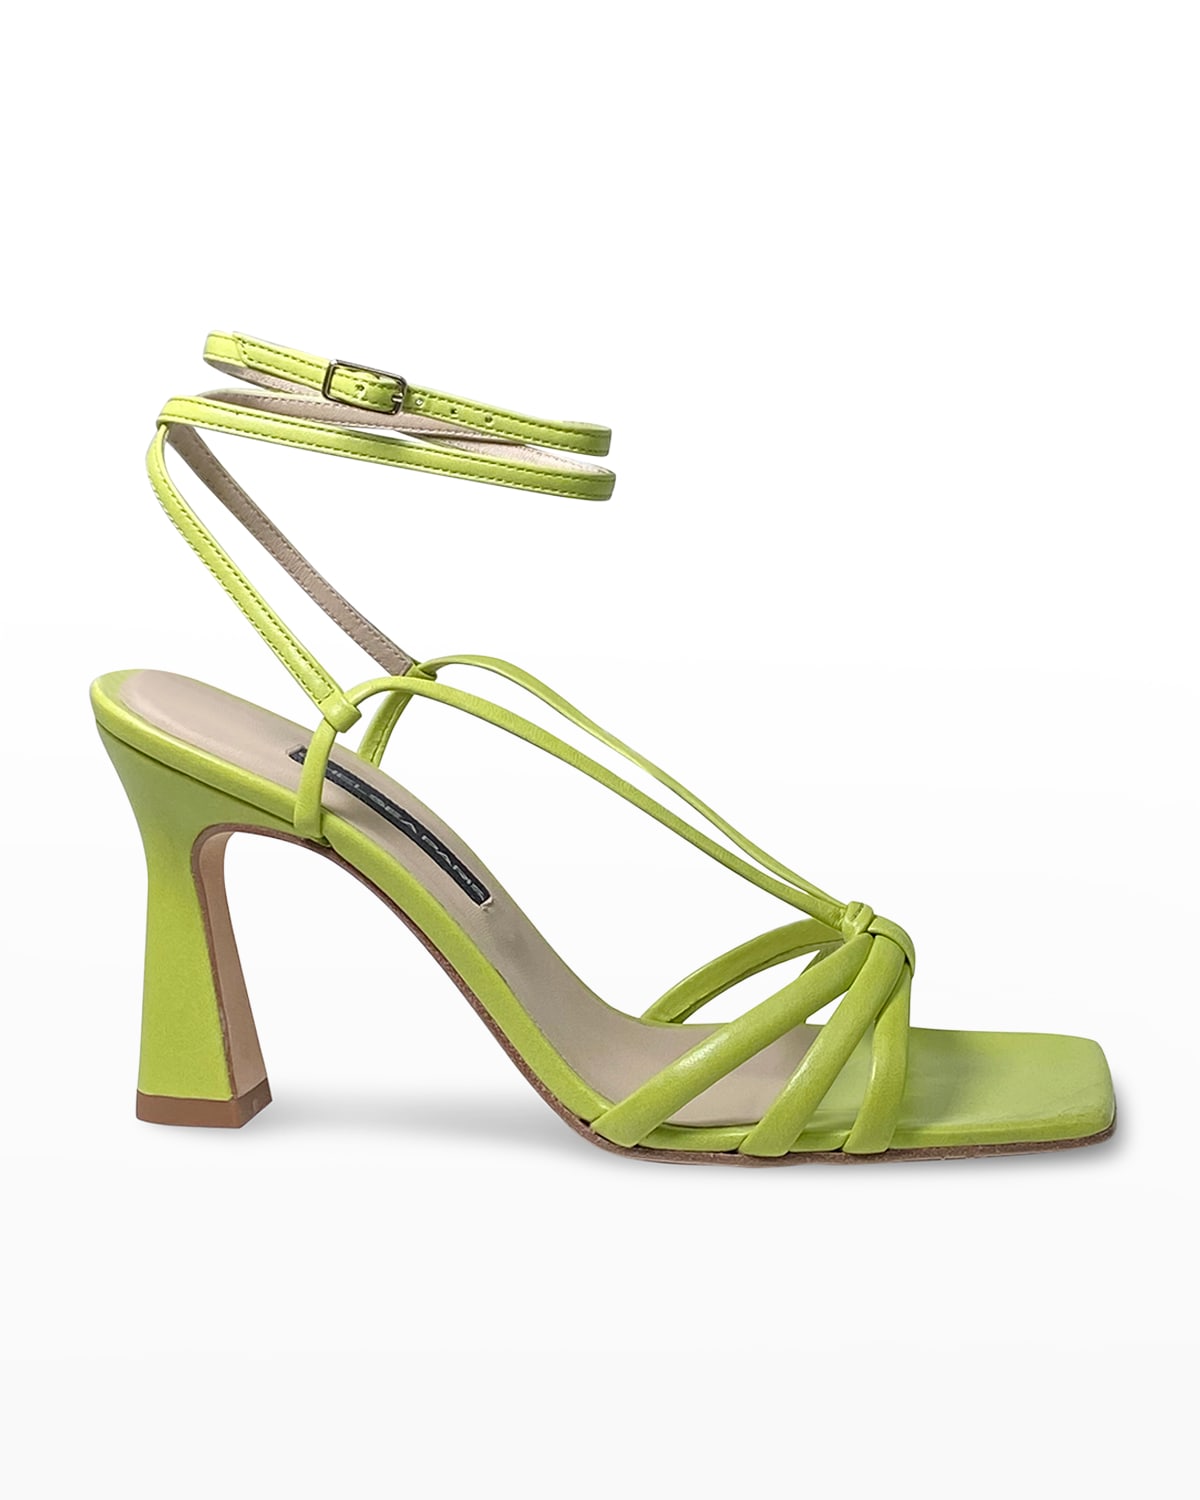 Chelsea Paris Remy Leather Ankle-Strap Sandals